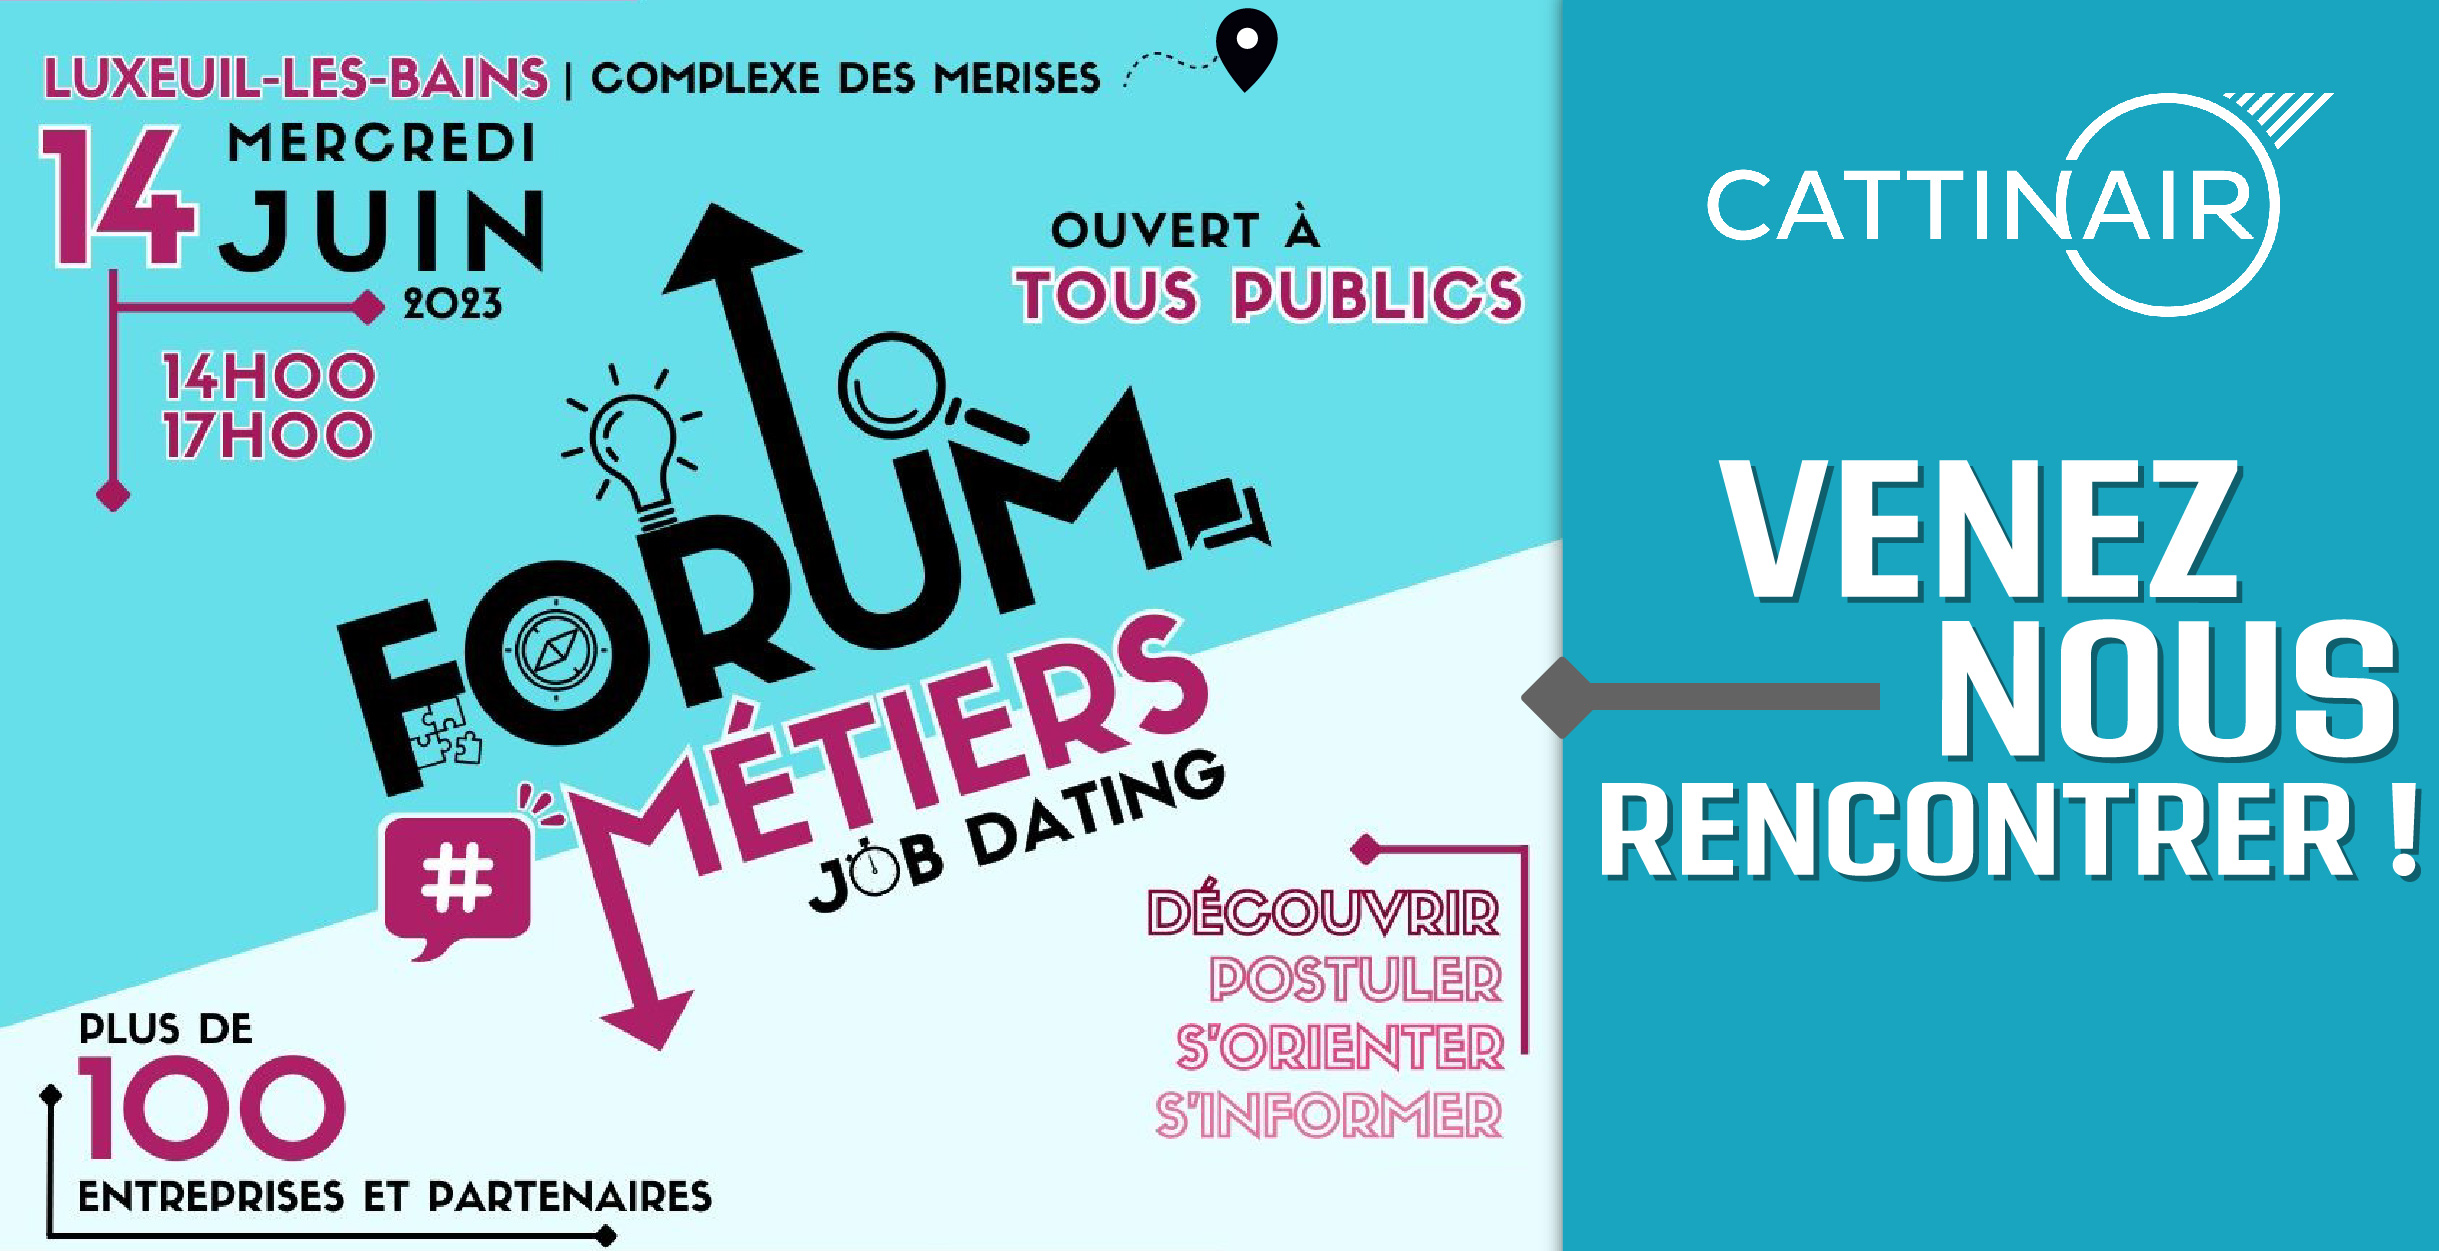 Venez découvrir nos offres d'emploi au Forum METIERS à Luxeuil-les-Bains !